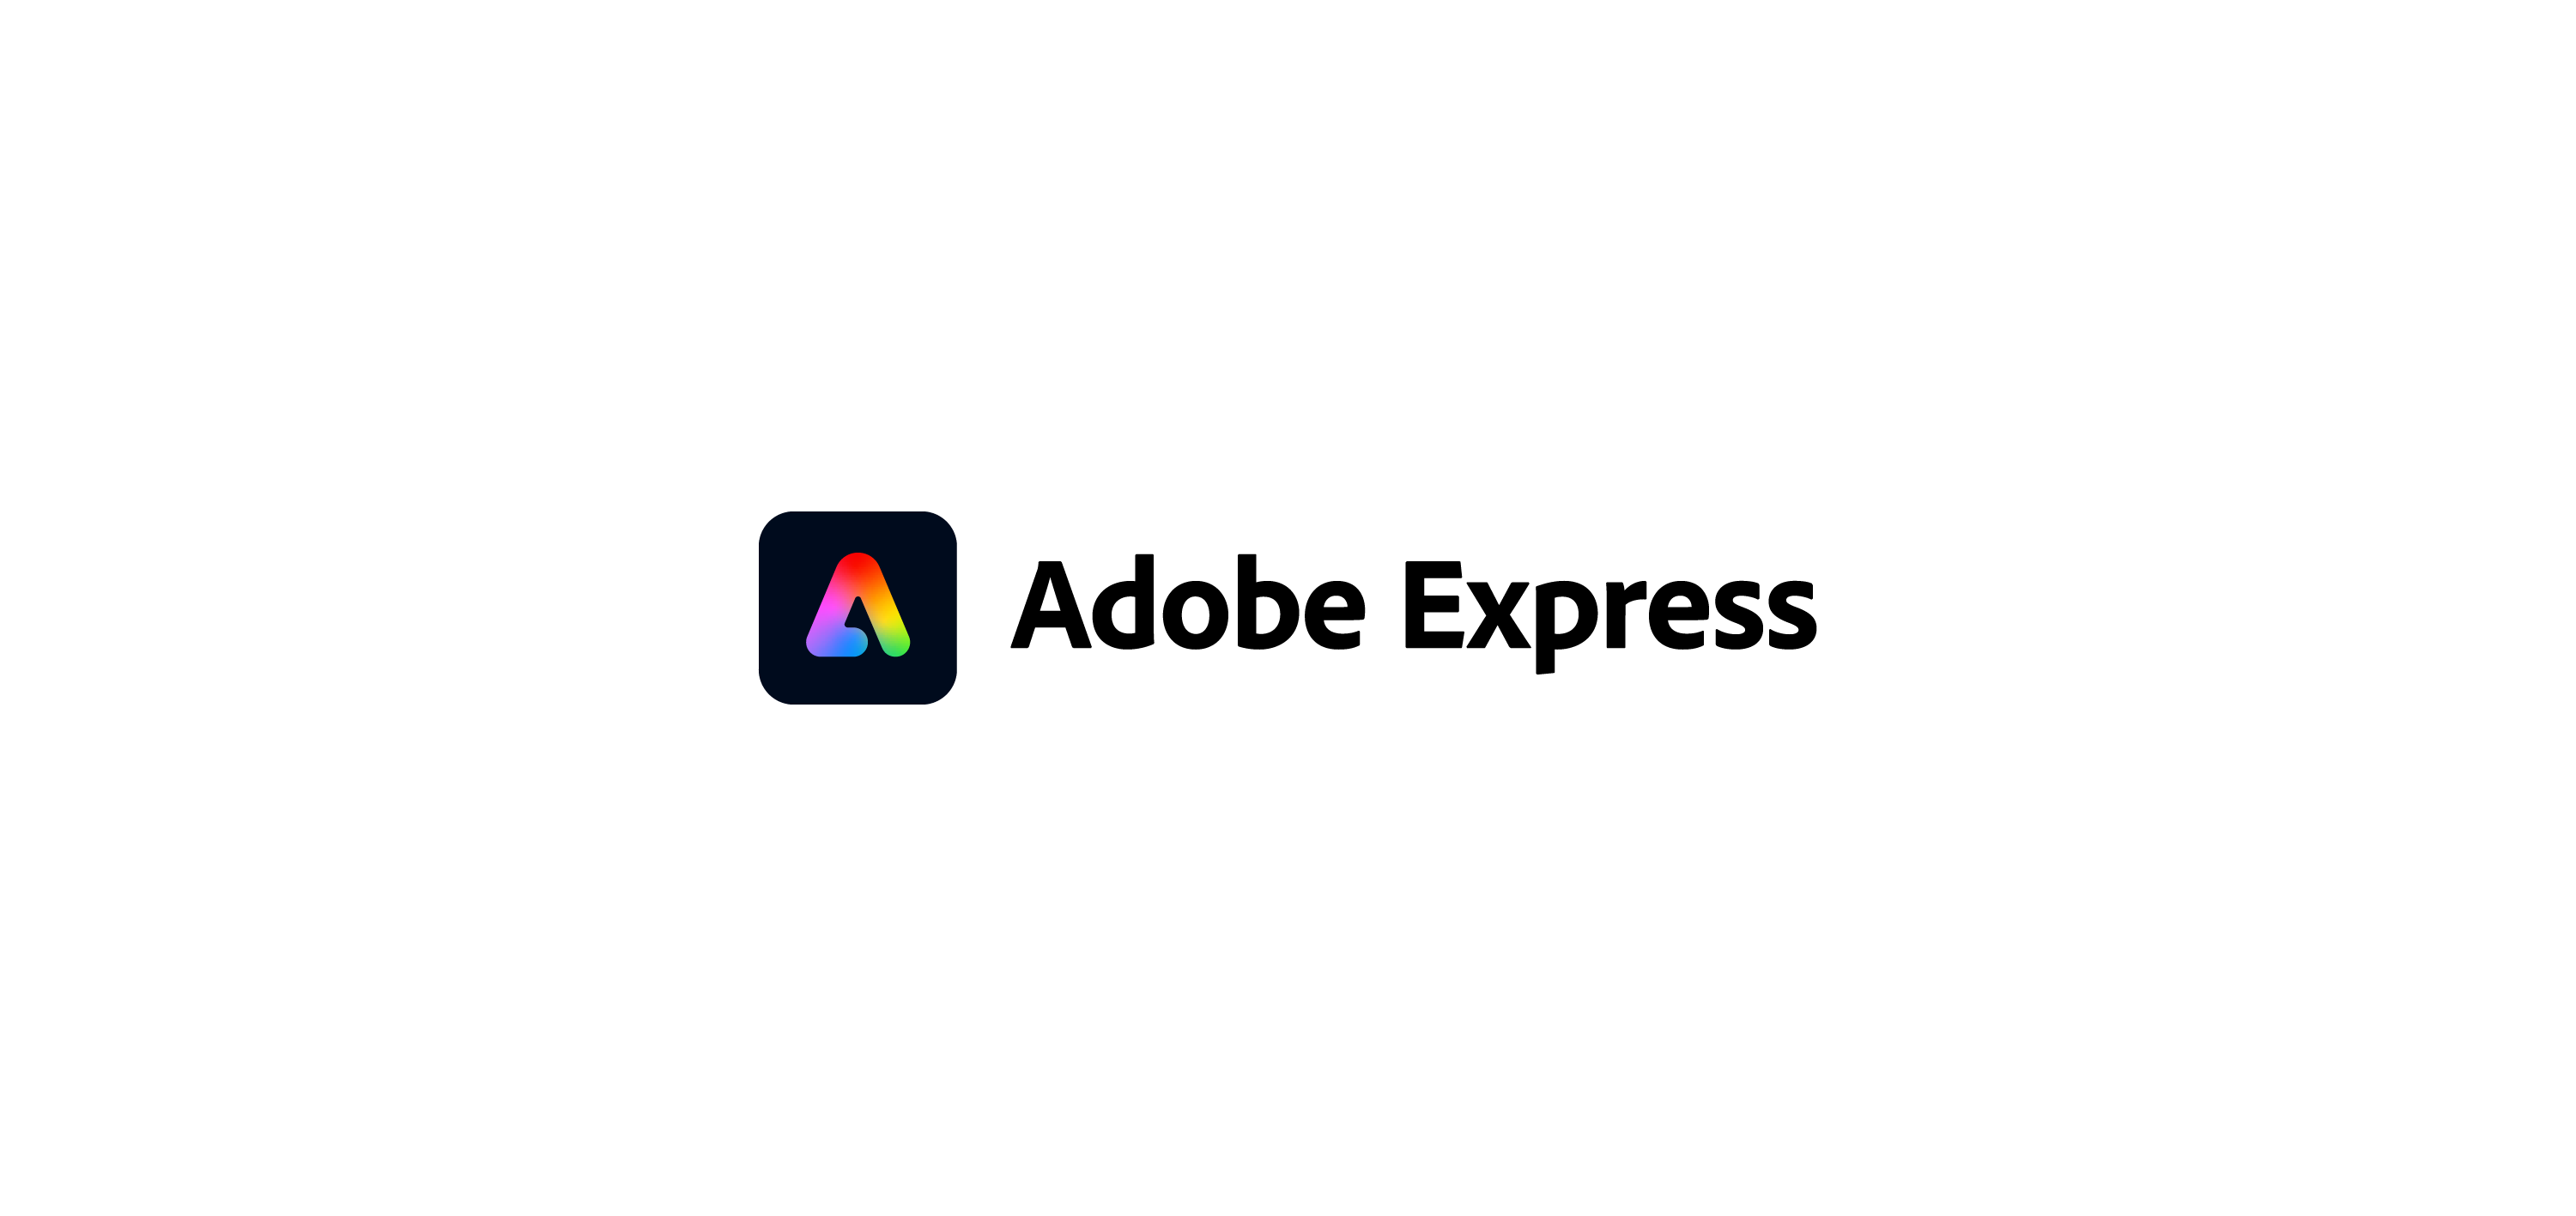 Adobe express logo vector